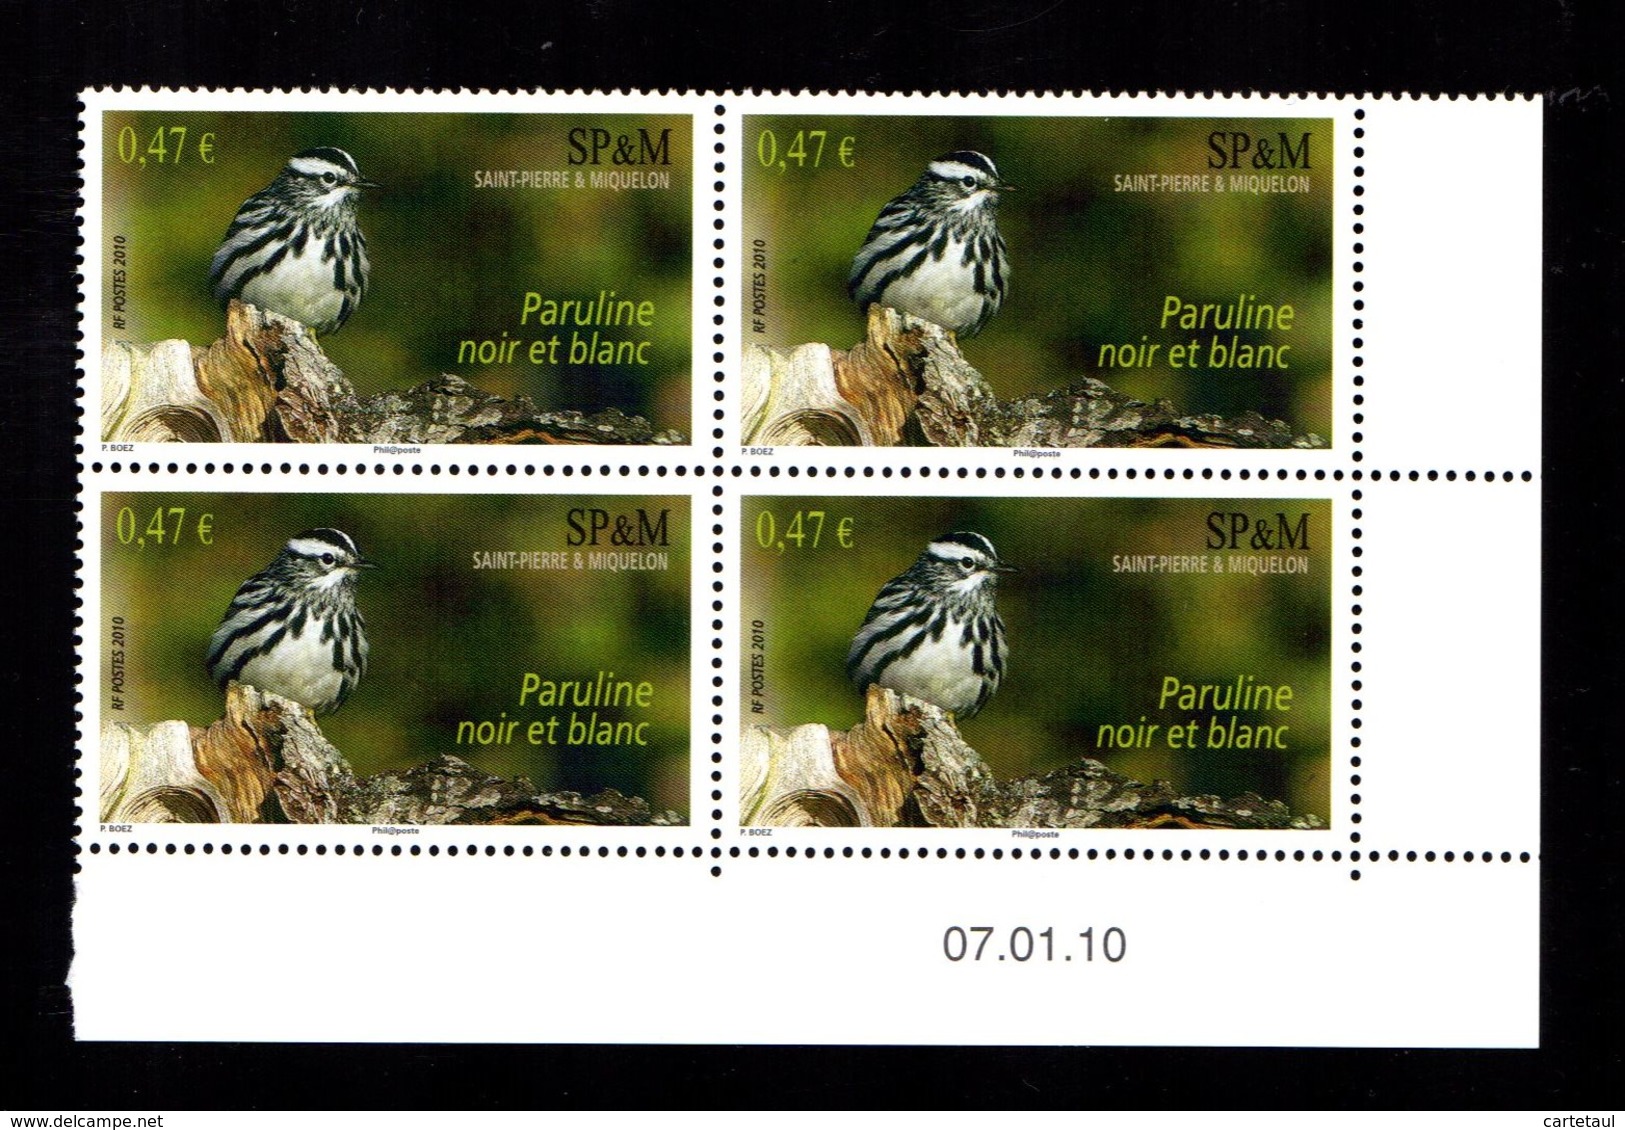 SAINT PIERRE MIQUELON  Oiseau Puraline Bloc De 4 Coin Daté 07.01.10  Gomme Intacte ** LUXE** - Unused Stamps